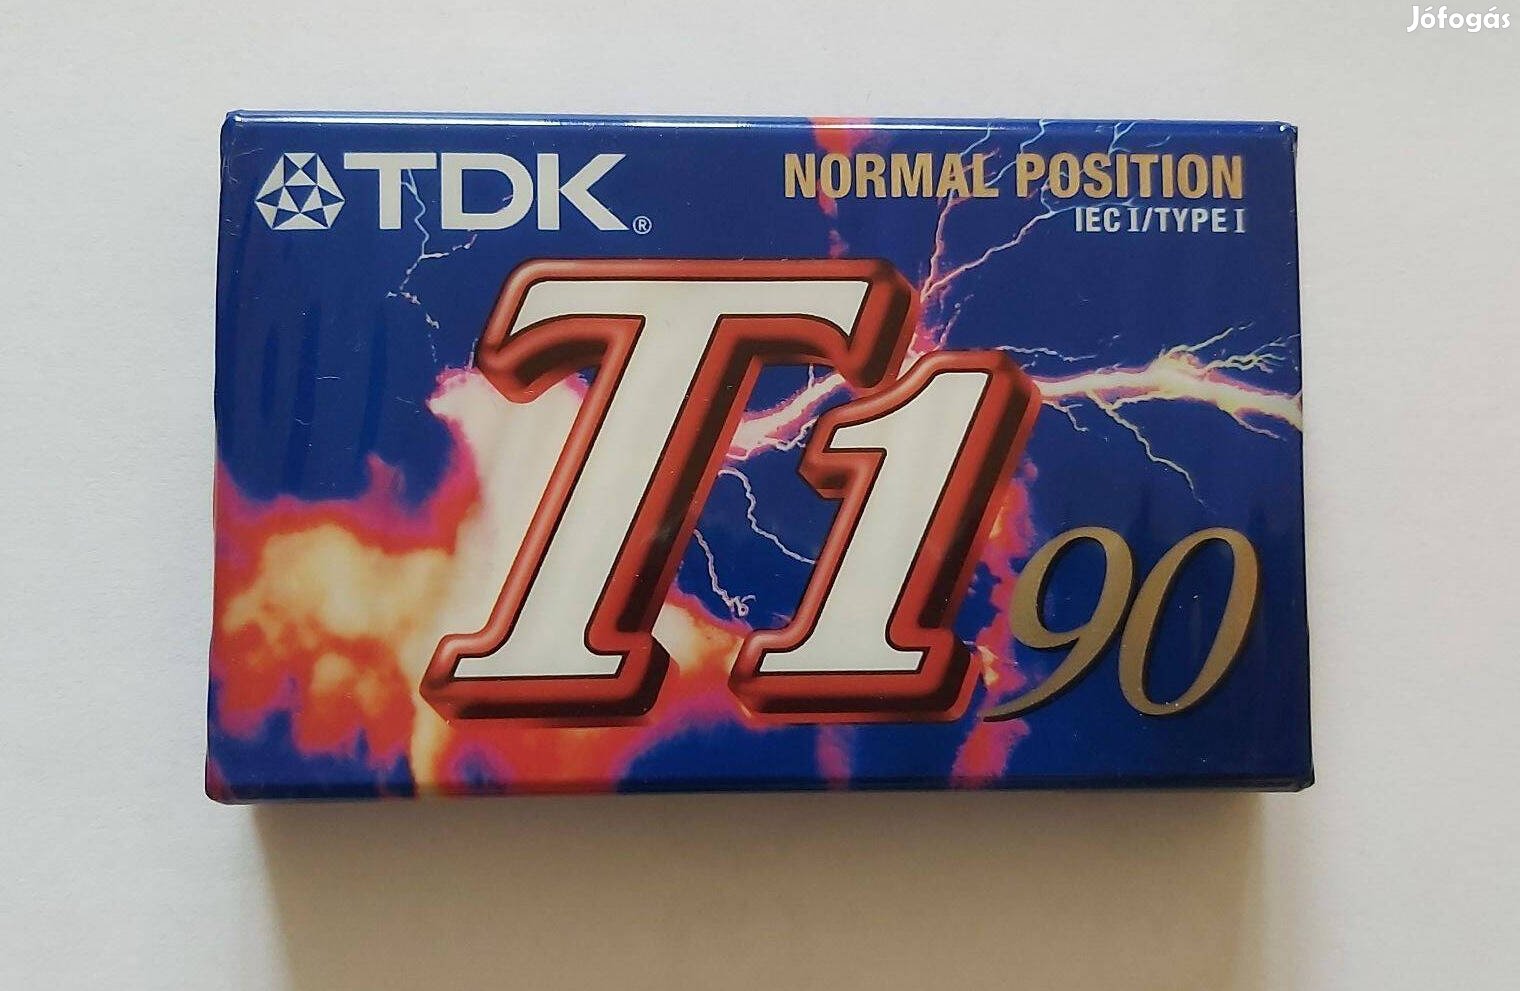 TDK magnó kazetta eladó T1/90